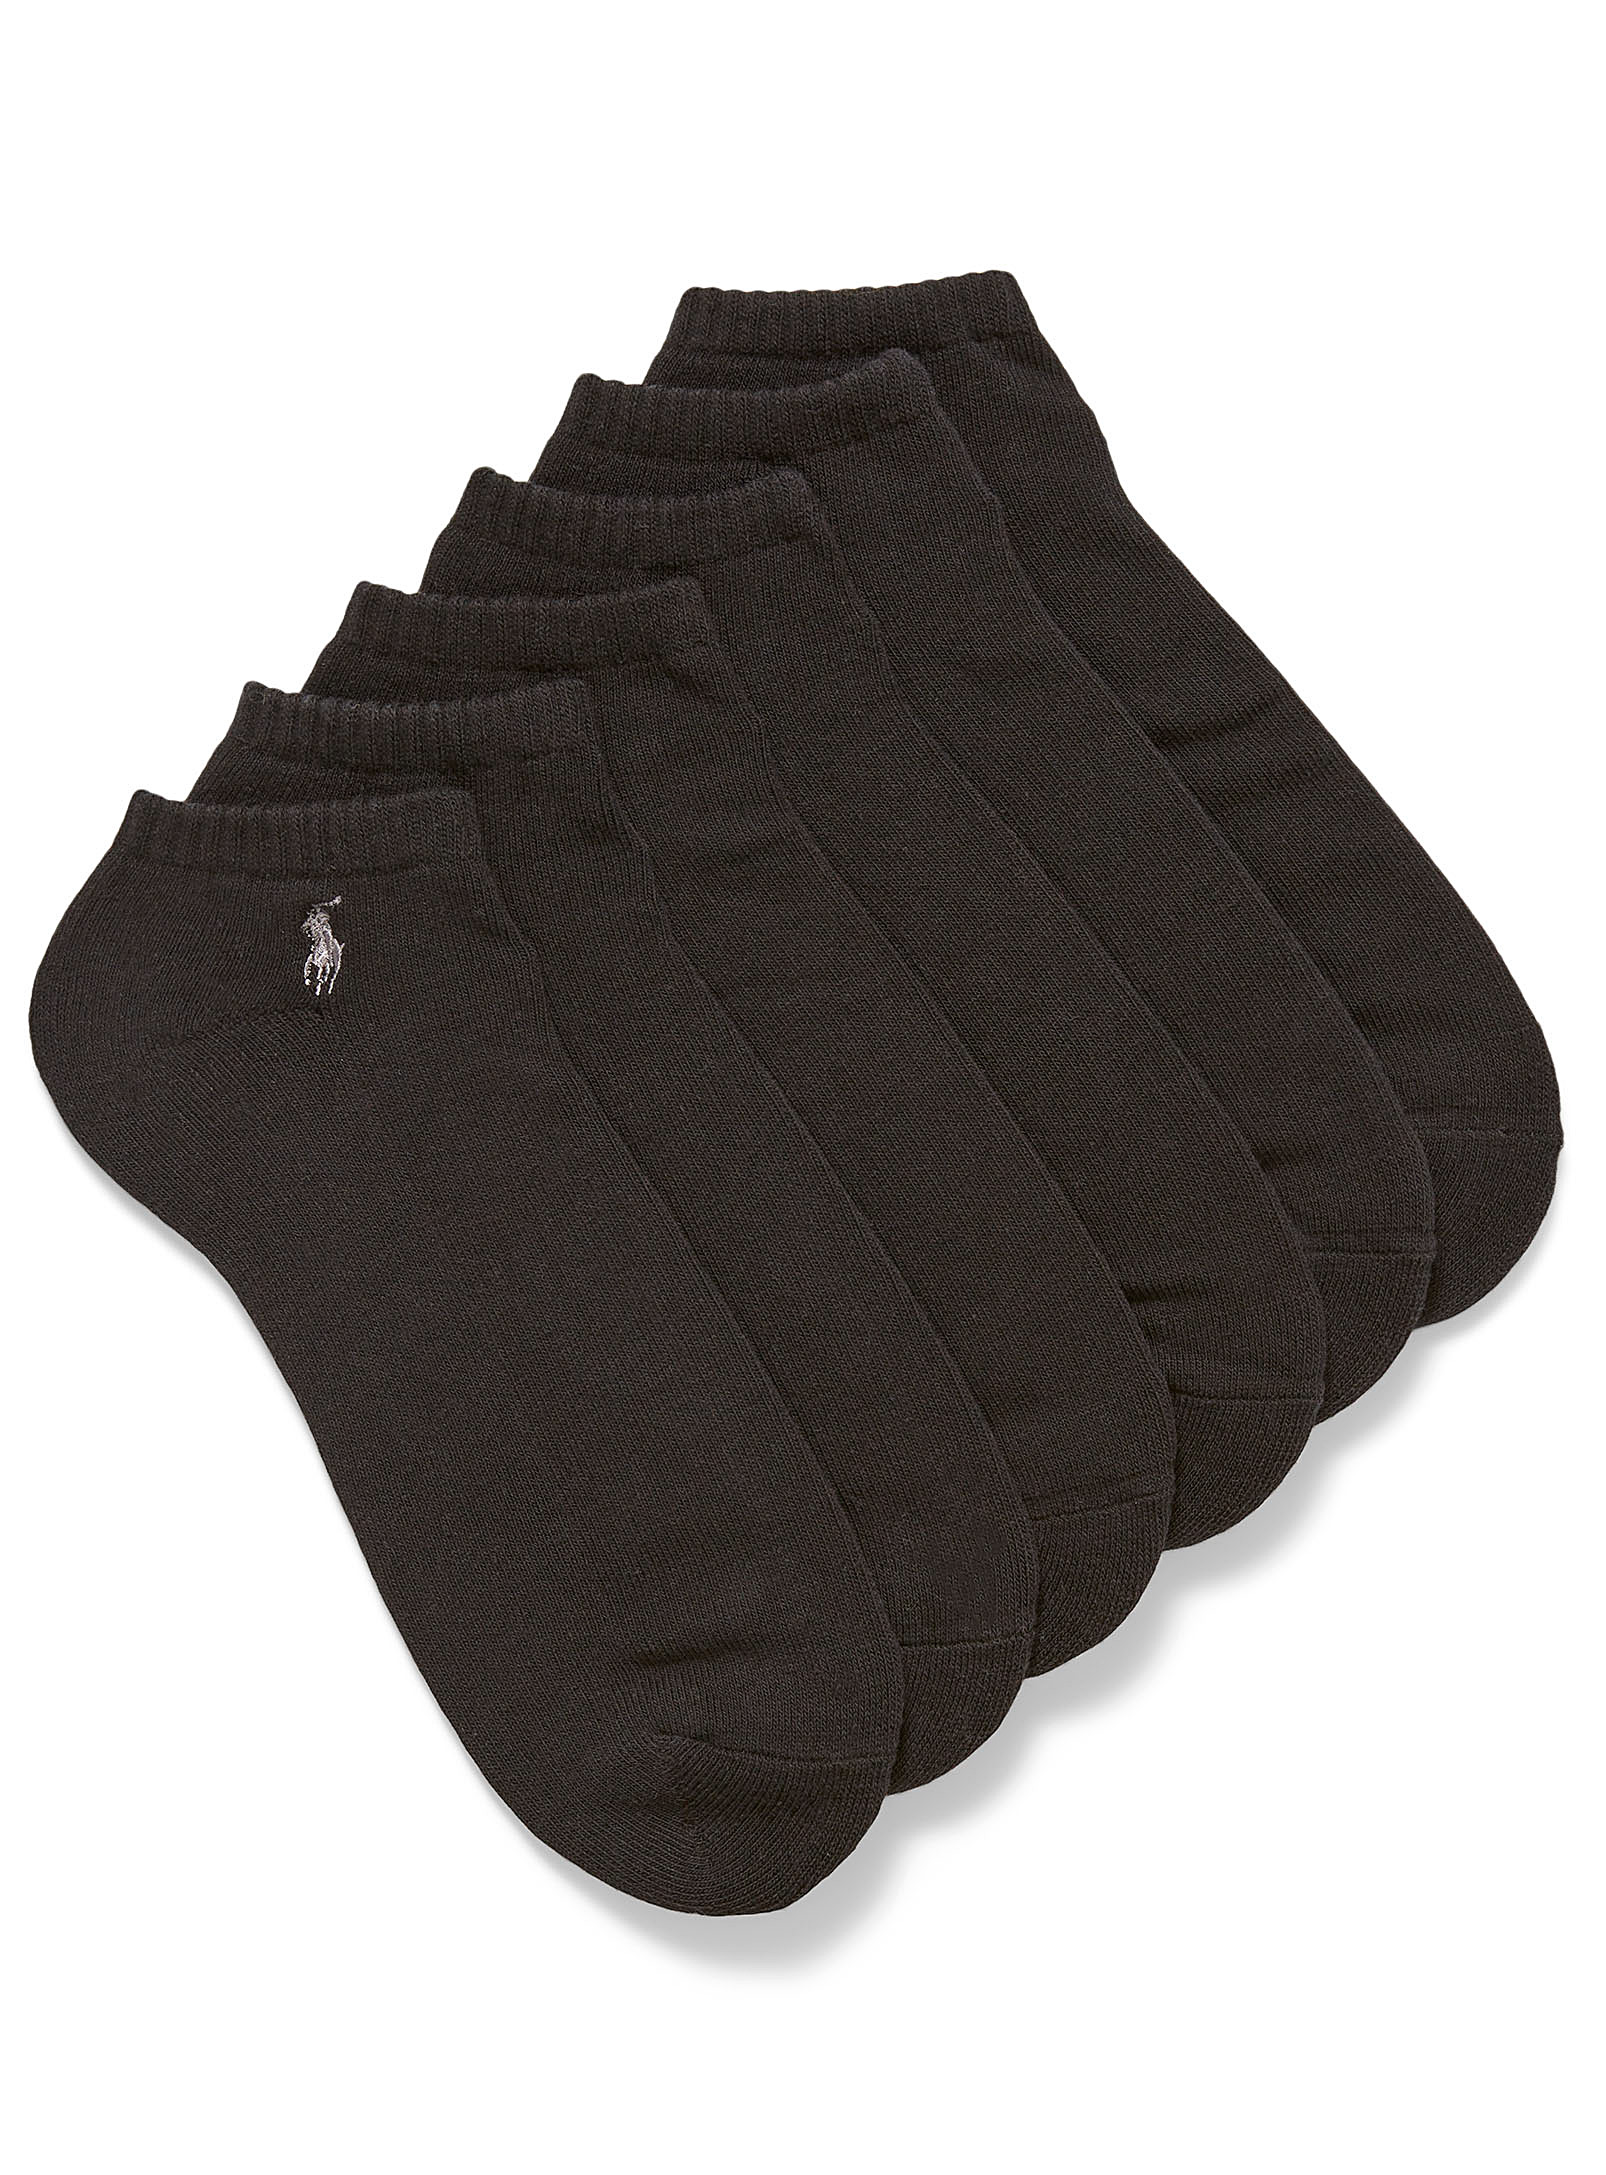 Polo Ralph Lauren - Men's Classic Sport ped socks 6-pack